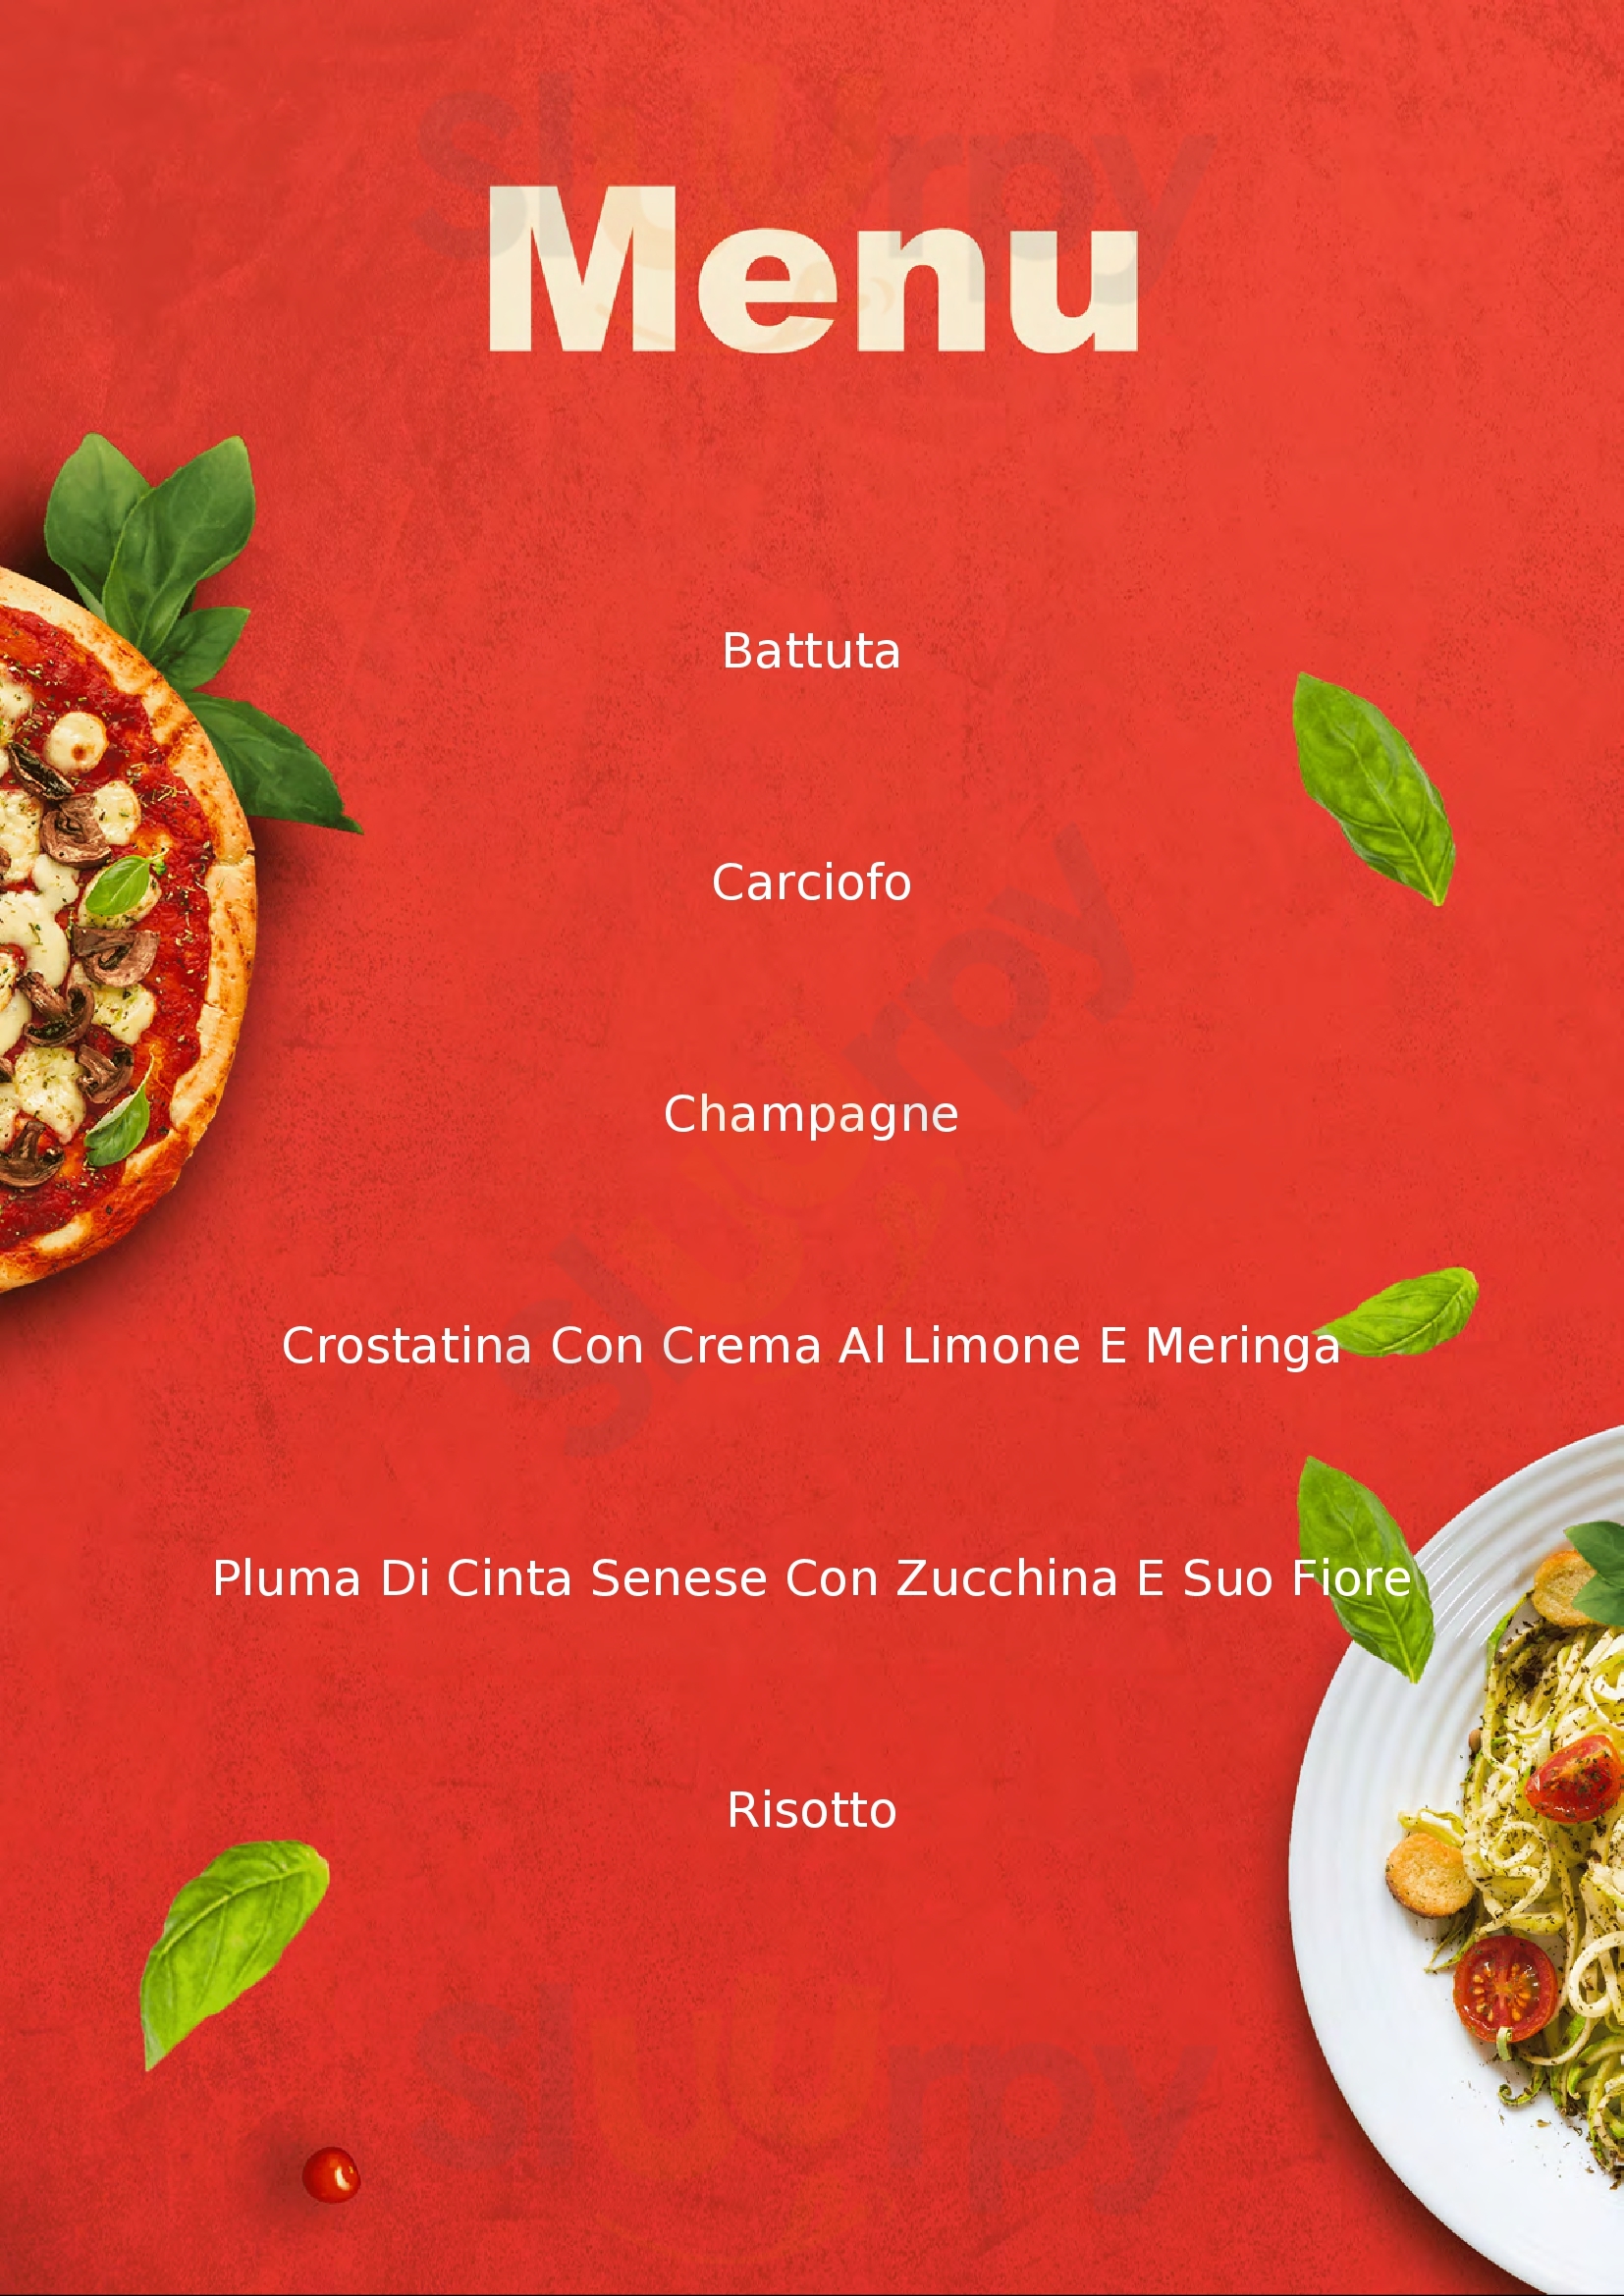 Terra Cucina E Cantina Montalcino menù 1 pagina